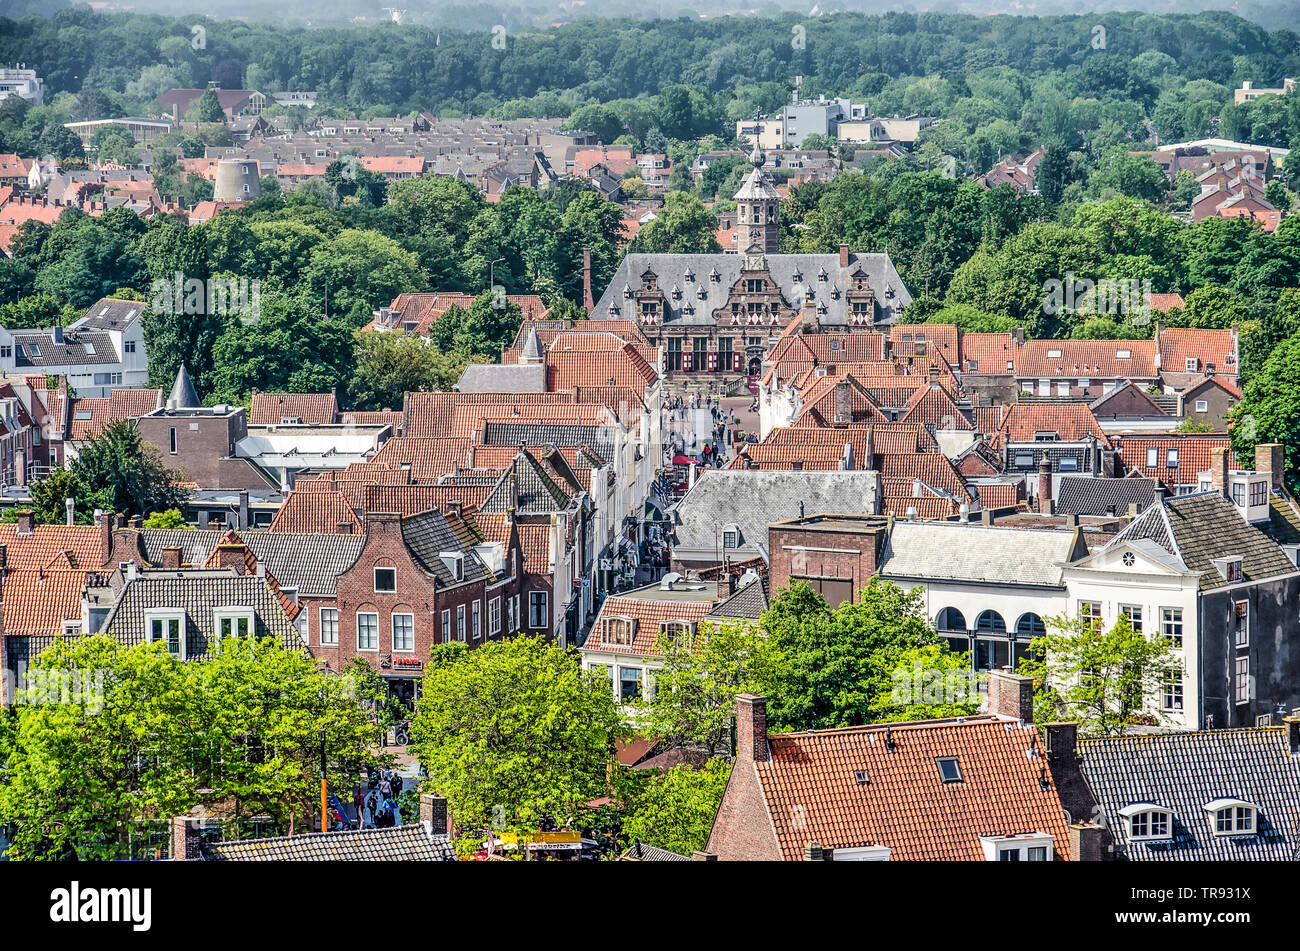 Middelburg, Pays-Bas, Mai 30, 2019 : Vue aérienne de Langeviele street et le bâtiment Kloveniersdoelen monumentale du xviie siècle Banque D'Images